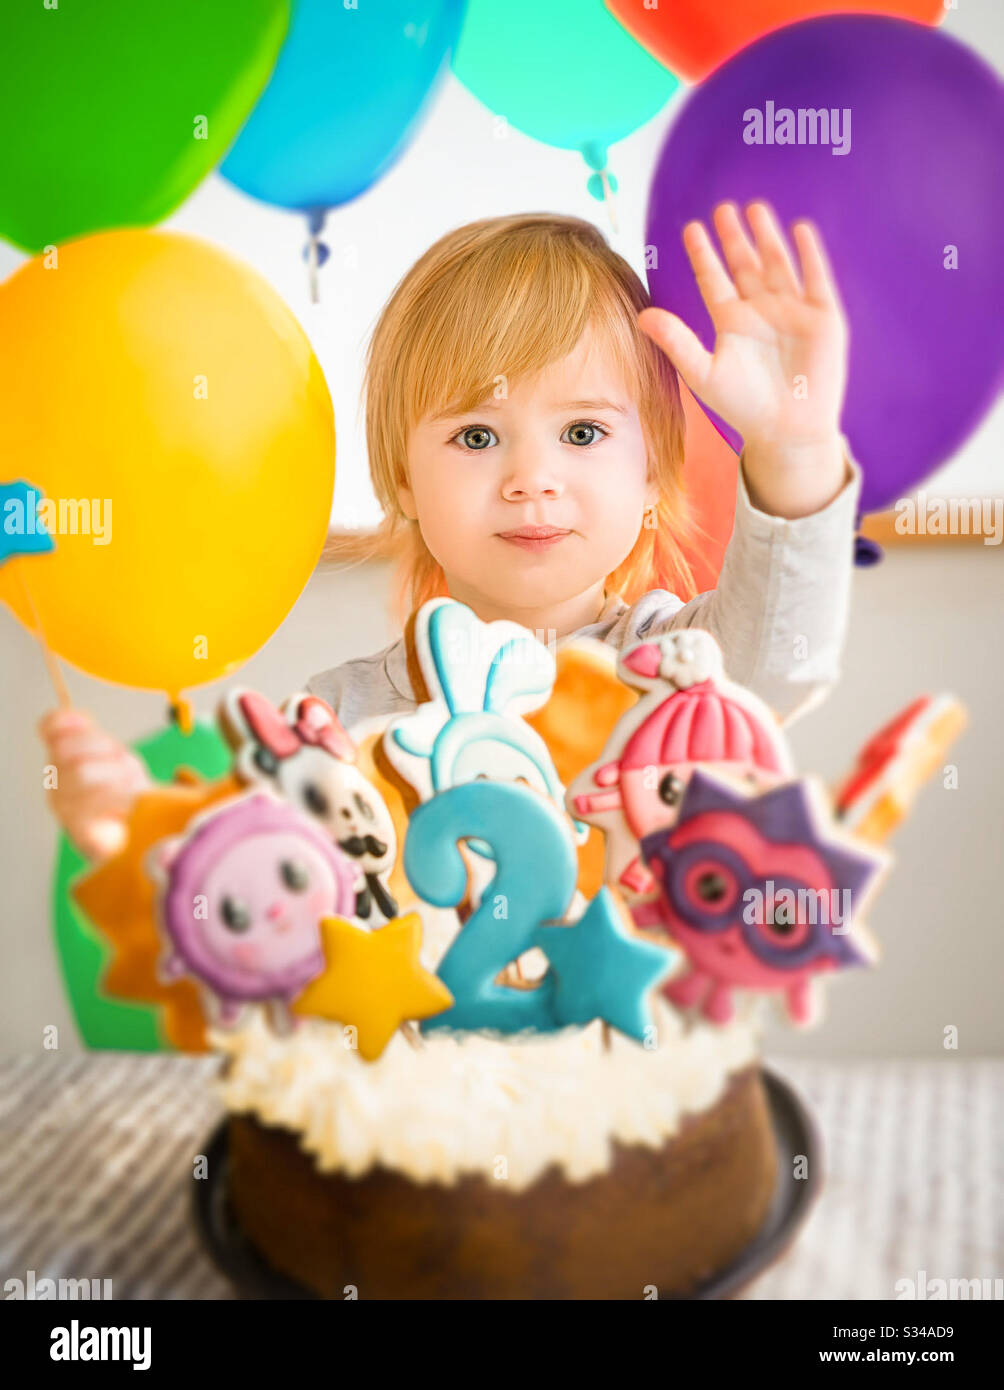 Feliz cumpleaños de un niño pequeño de 2 años Fotografía de stock